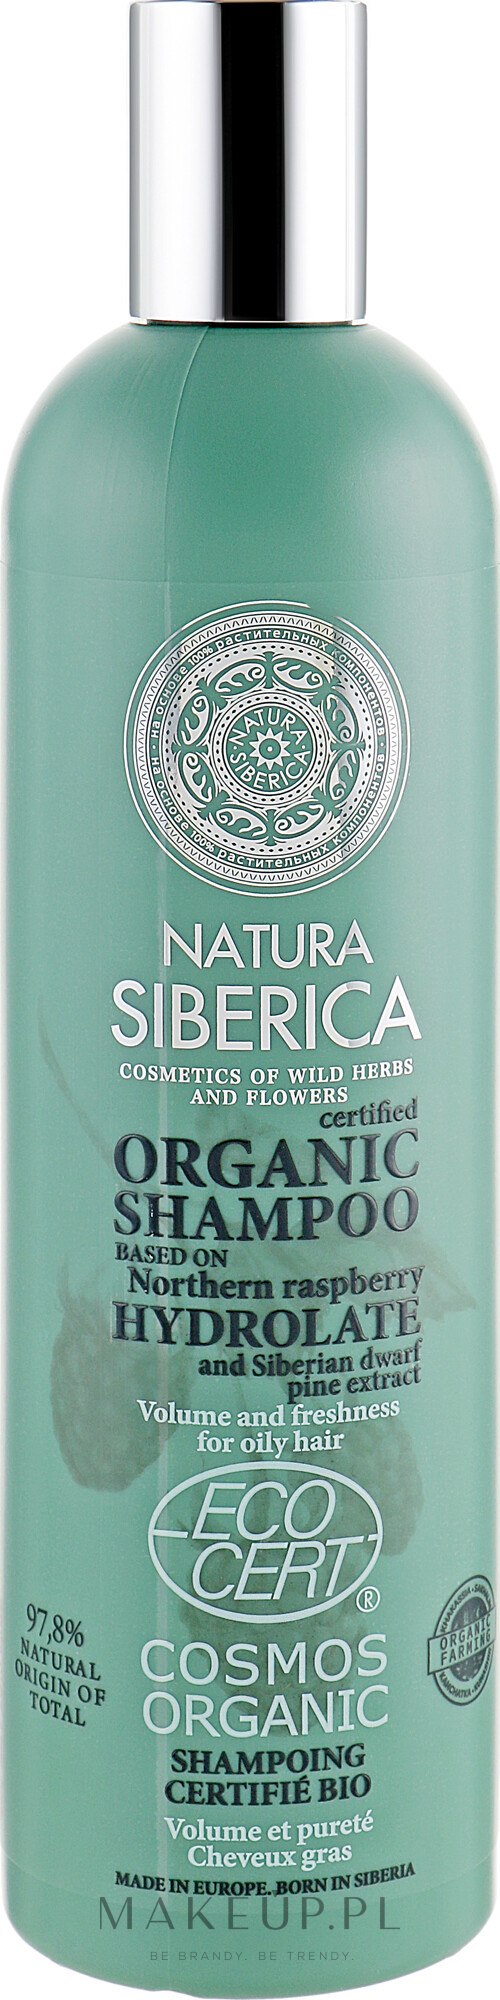 natura siberica szampon natura